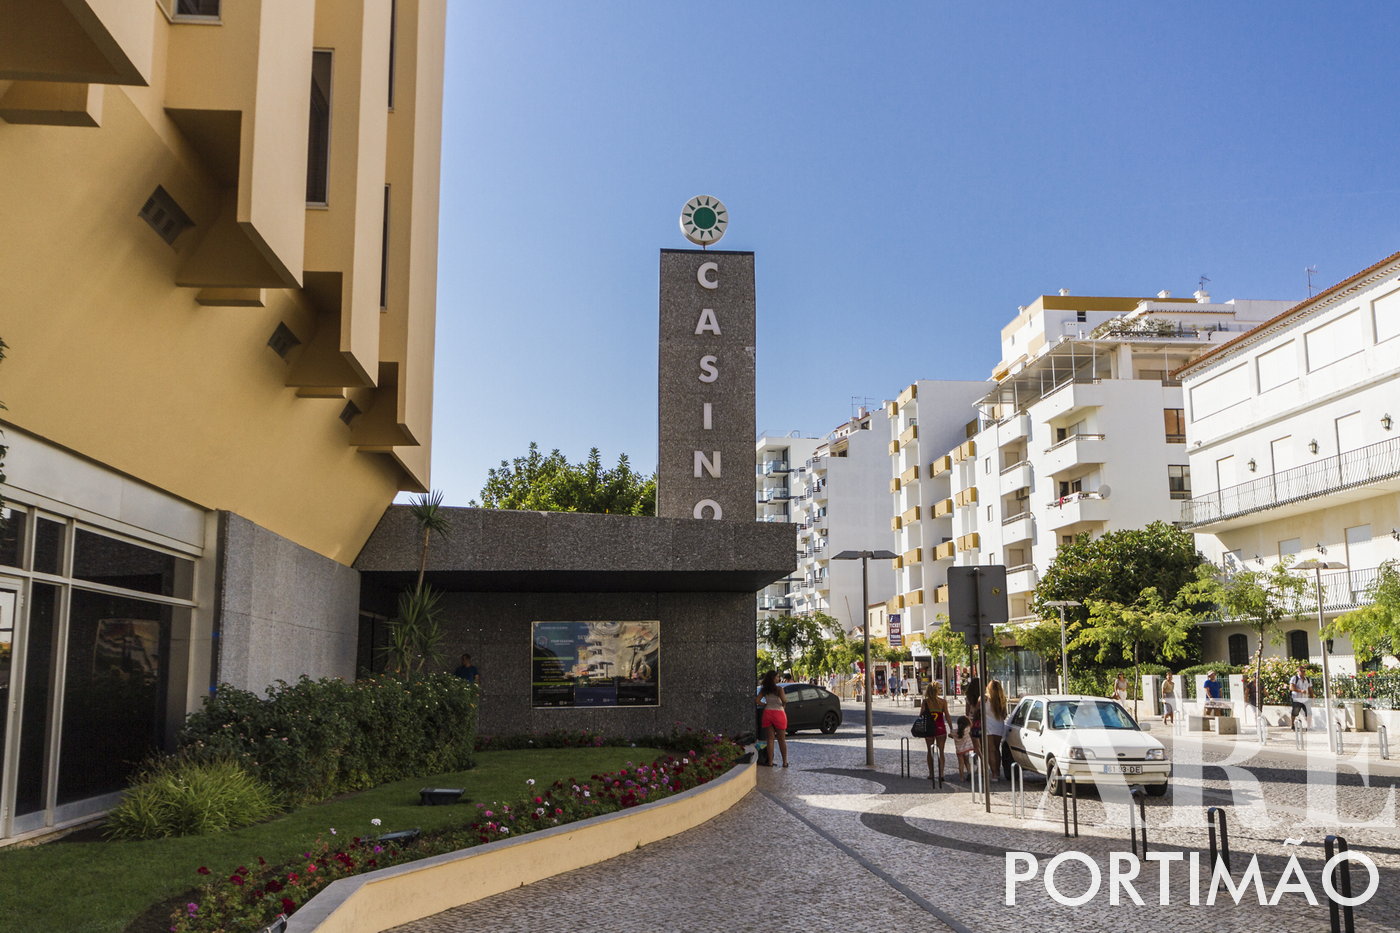 Entrada al Casino de Portimão